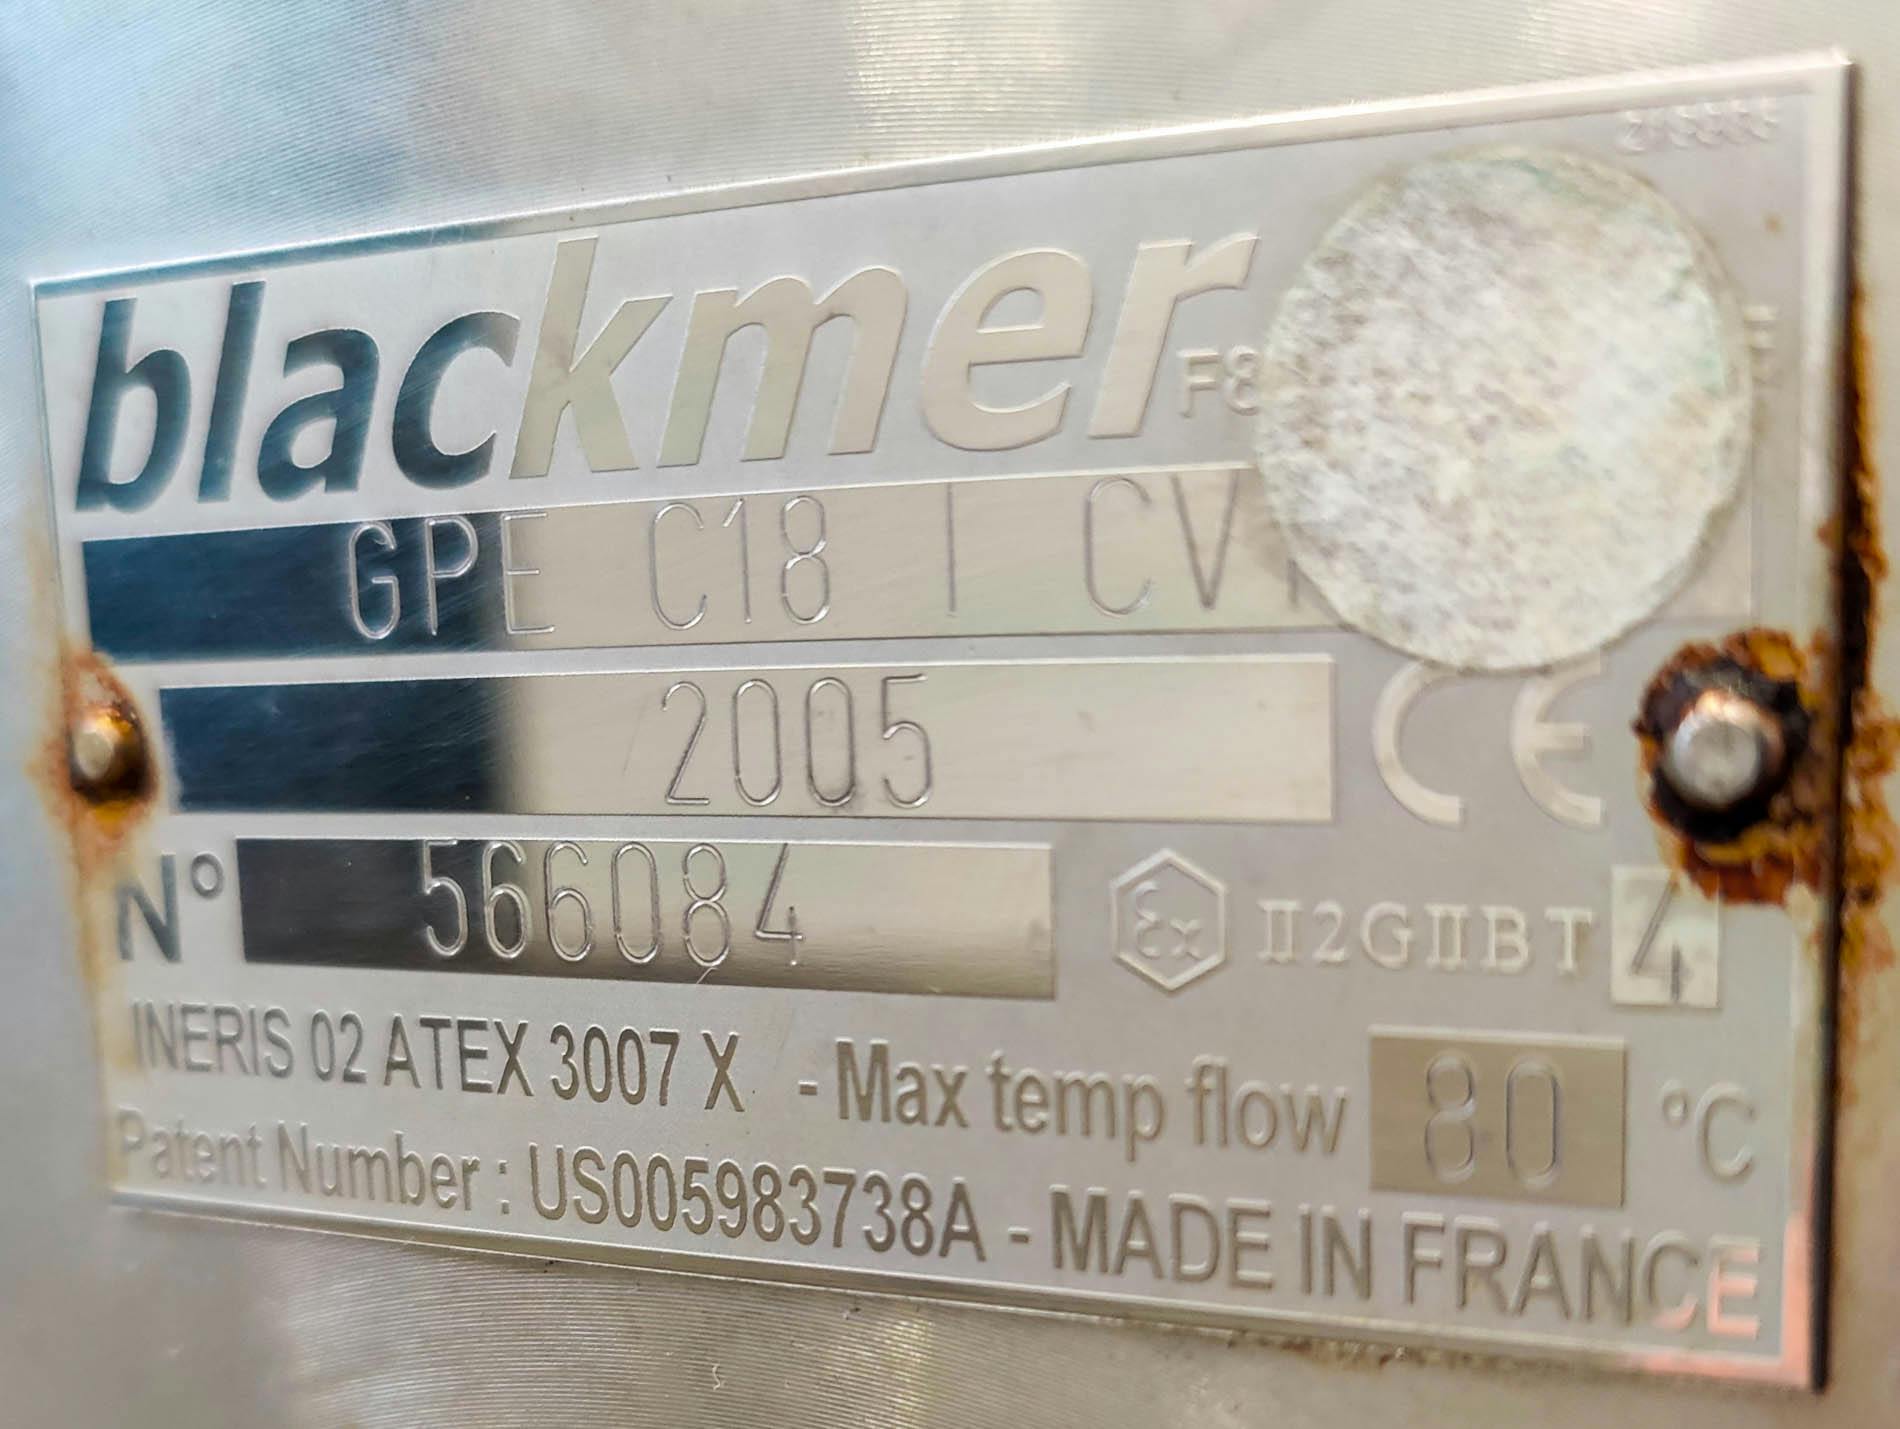 Blackmer GPI C18 I CV - Mimośrodowa pompa ślimakowa - image 11